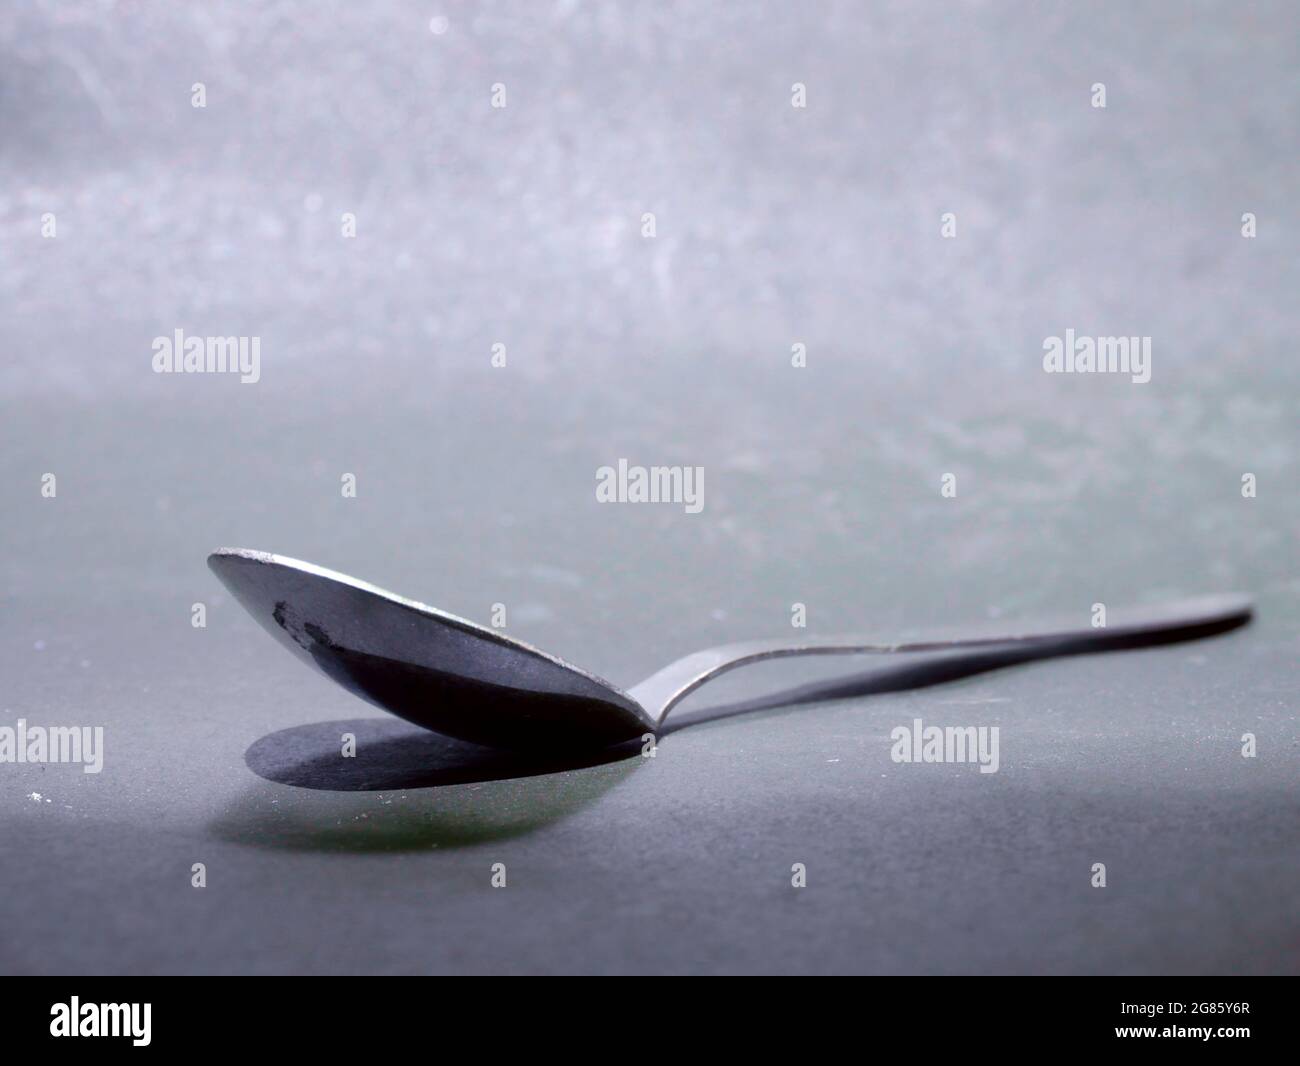 Cuillère simple en acier inoxydable isolée sur fond gris, image de la coutellerie de cuisine. Banque D'Images